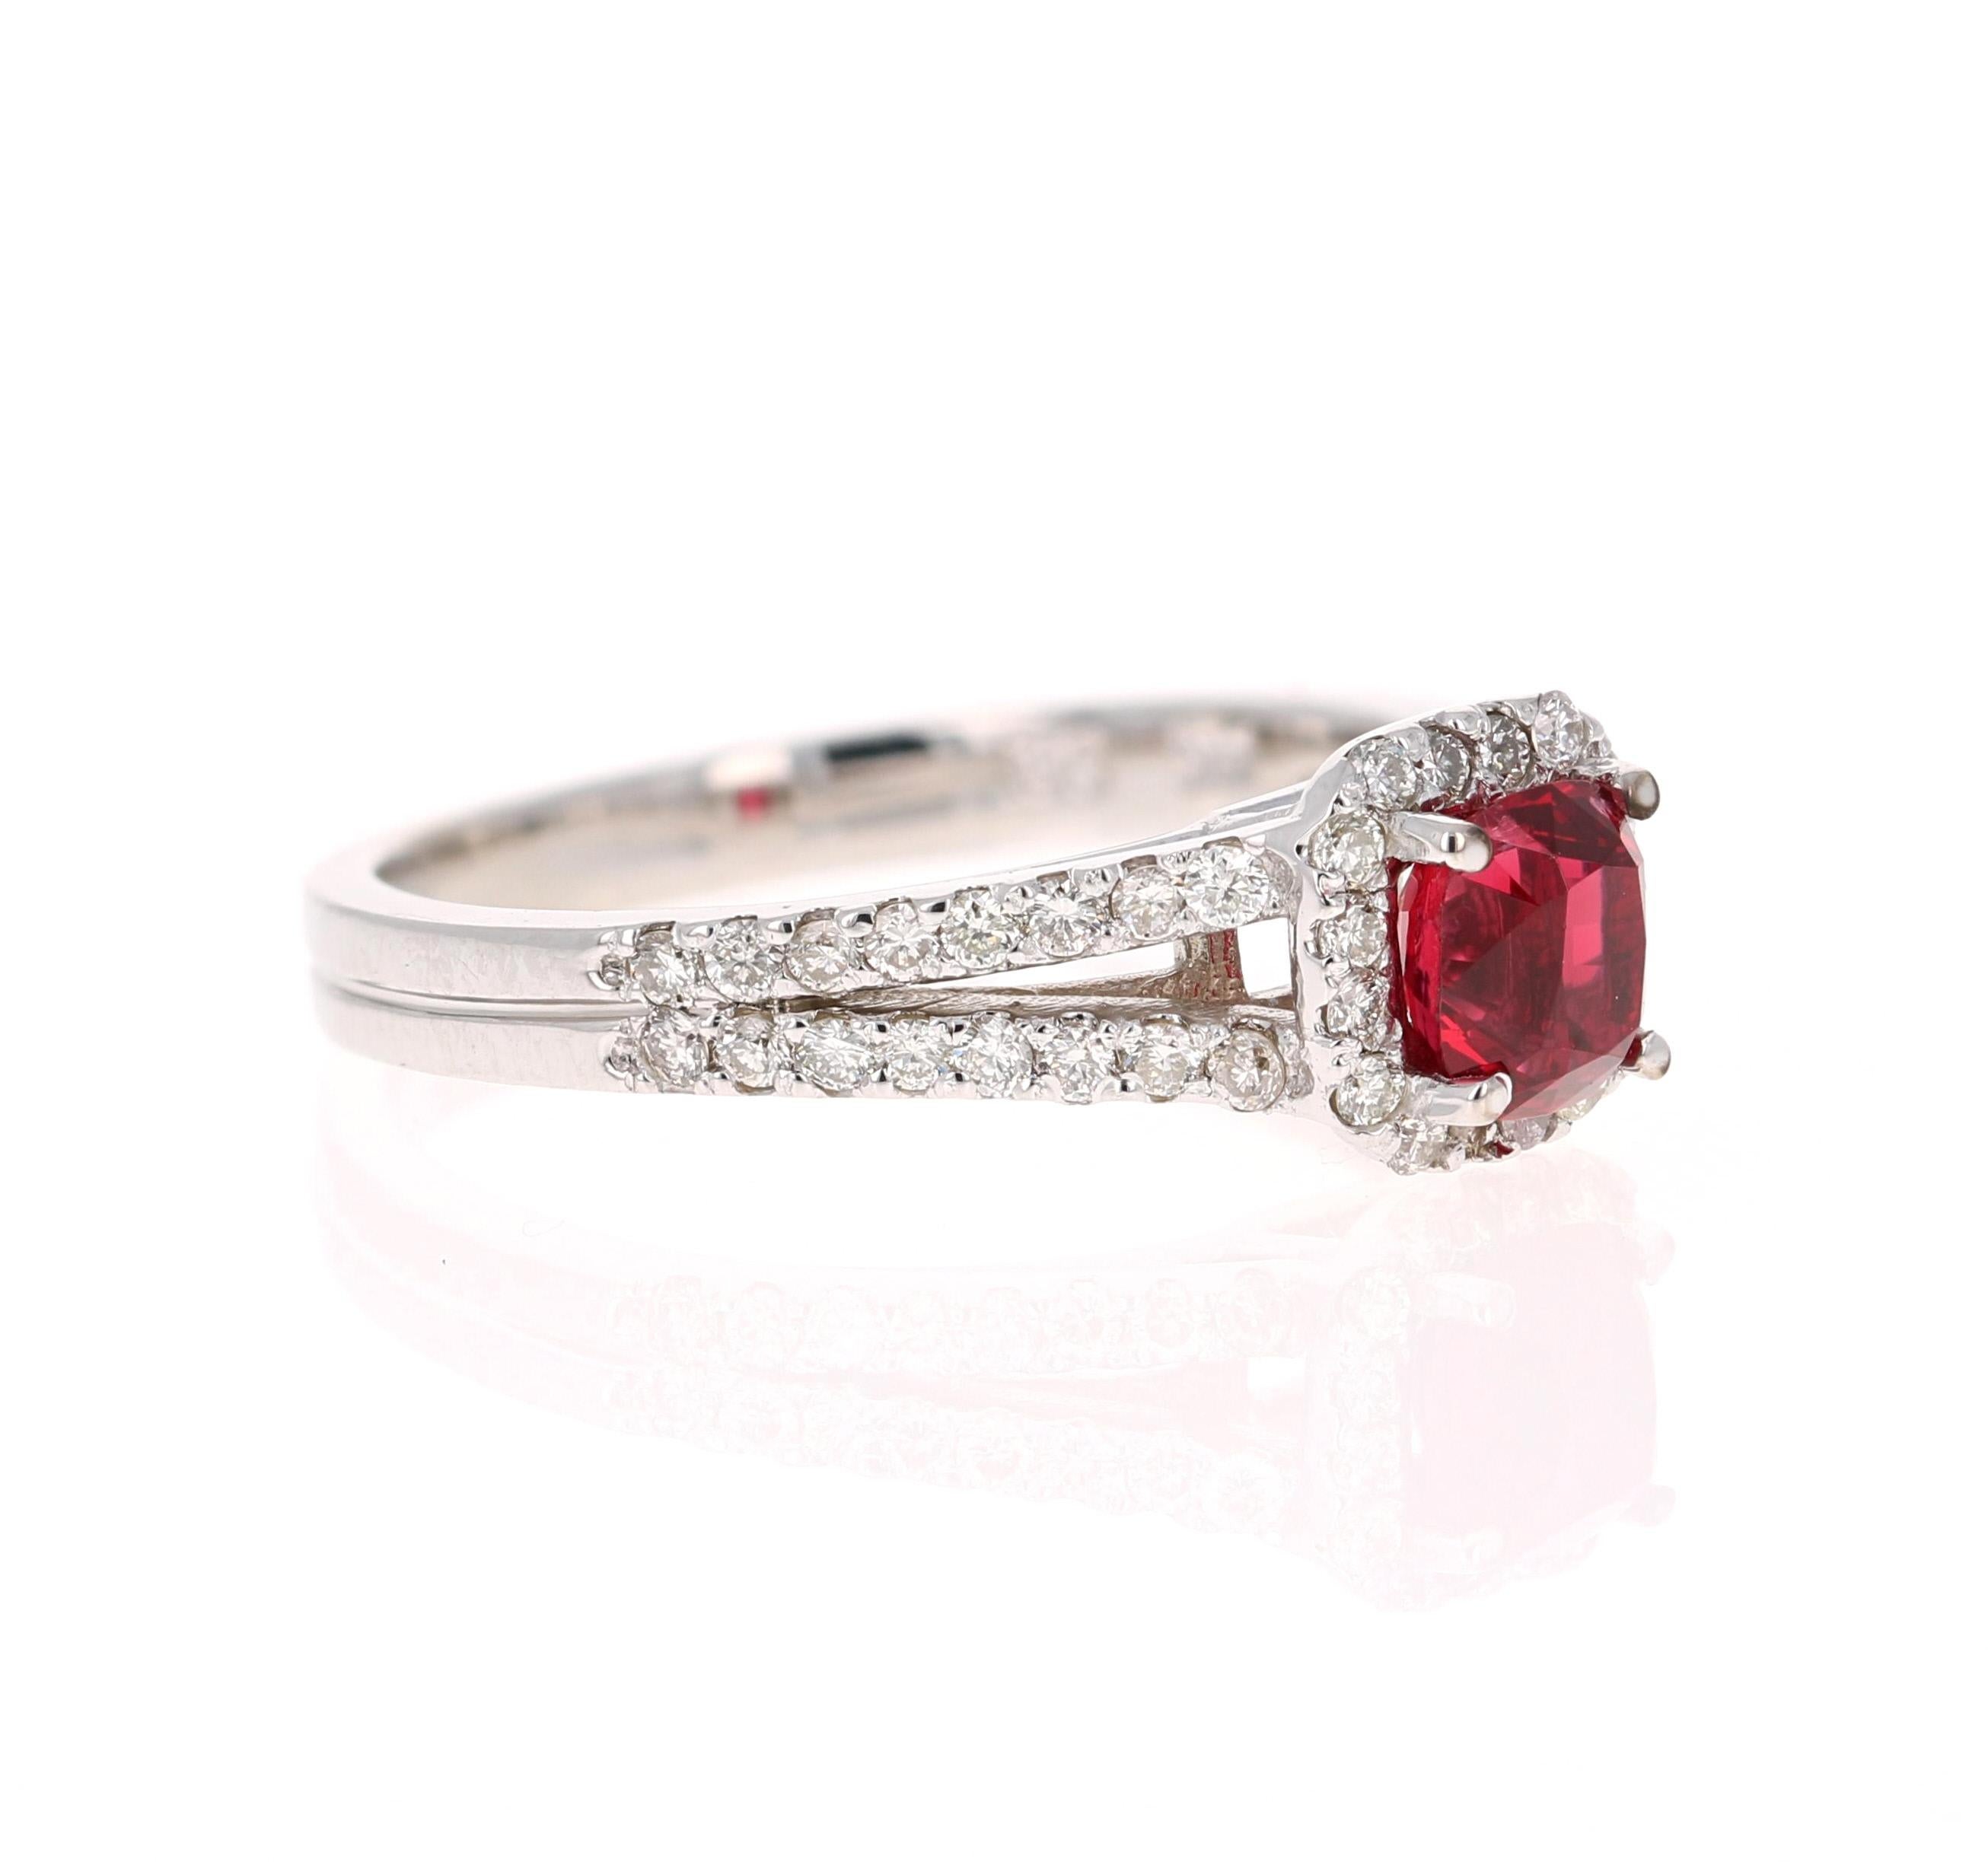 Dieser Ring hat einen wunderschönen natürlichen roten Spinell im Kissenschliff, der 0,88 Karat wiegt und von 48 Diamanten im Rundschliff umgeben ist, die 0,44 Karat wiegen.  Die Reinheit und Farbe der Diamanten ist VS2-H.  Das Gesamtkaratgewicht des